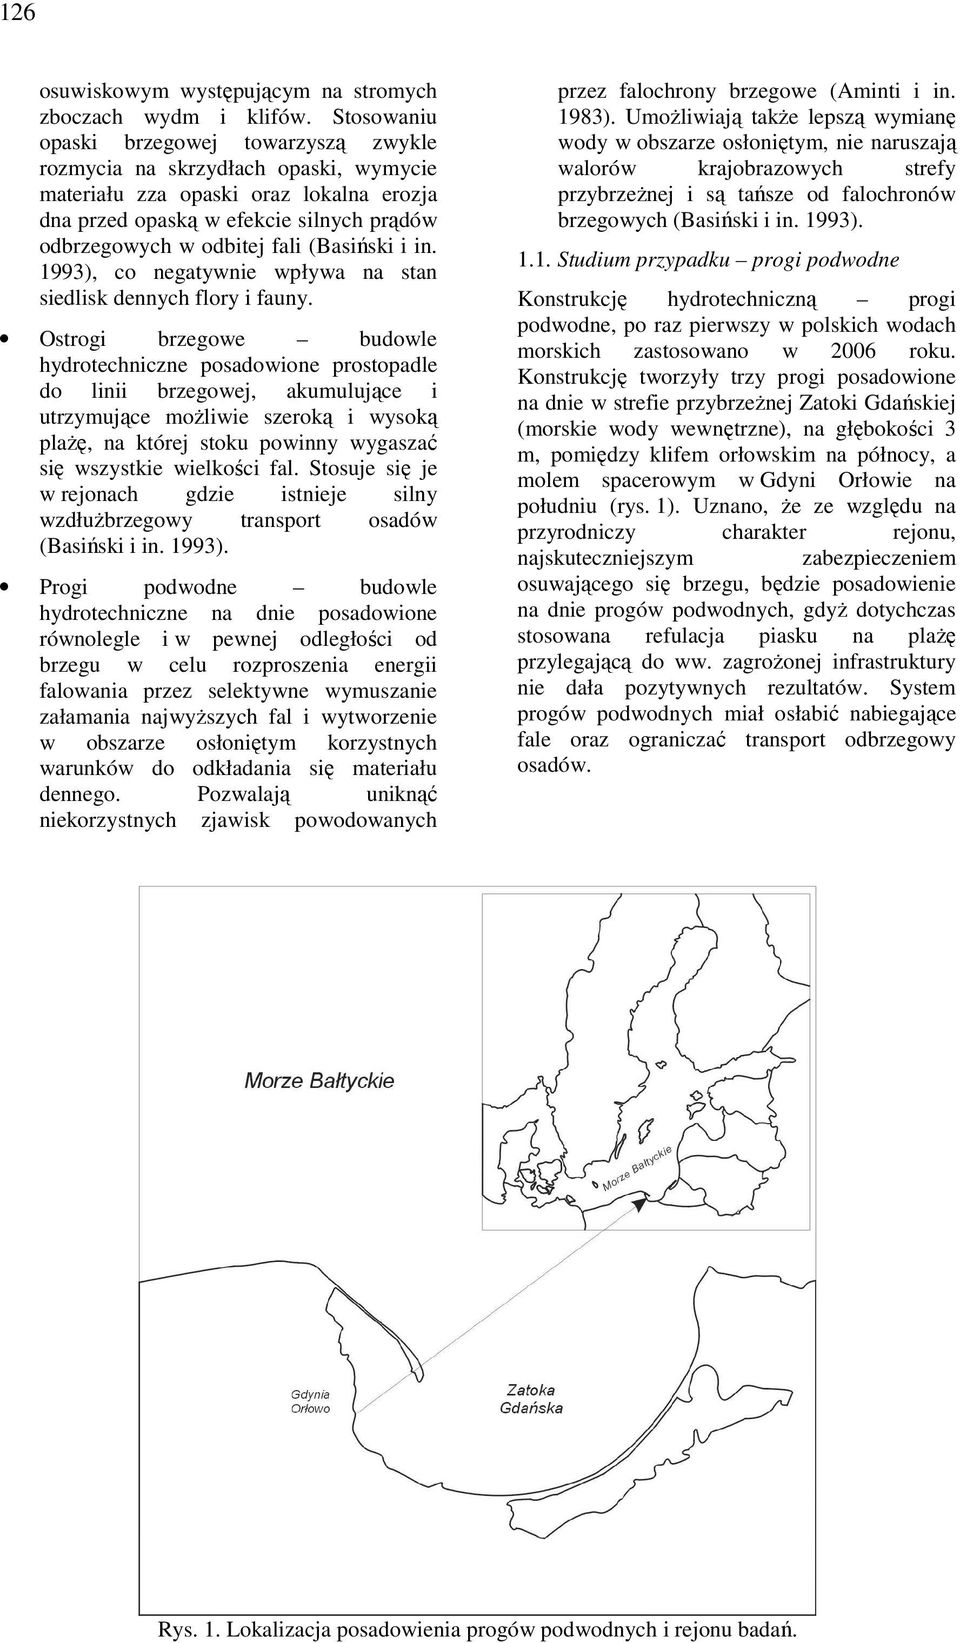 (Basiński i in. 1993), co negatywnie wpływa na stan siedlisk dennych flory i fauny.